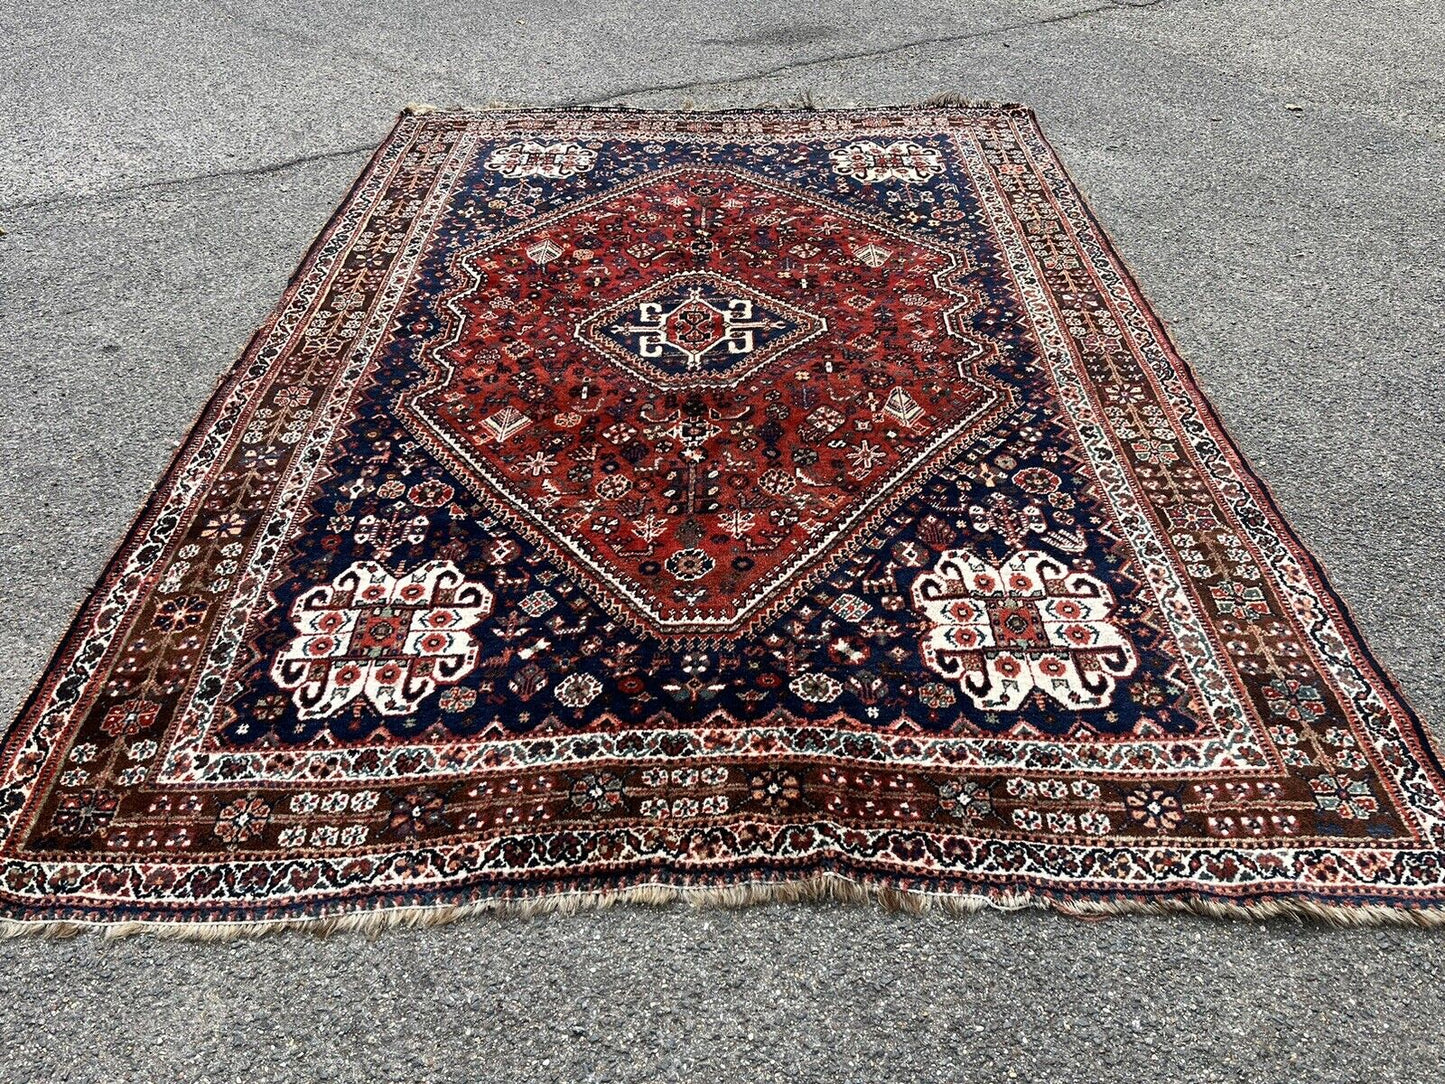 Rug, Carpet 256 X 170 Cms